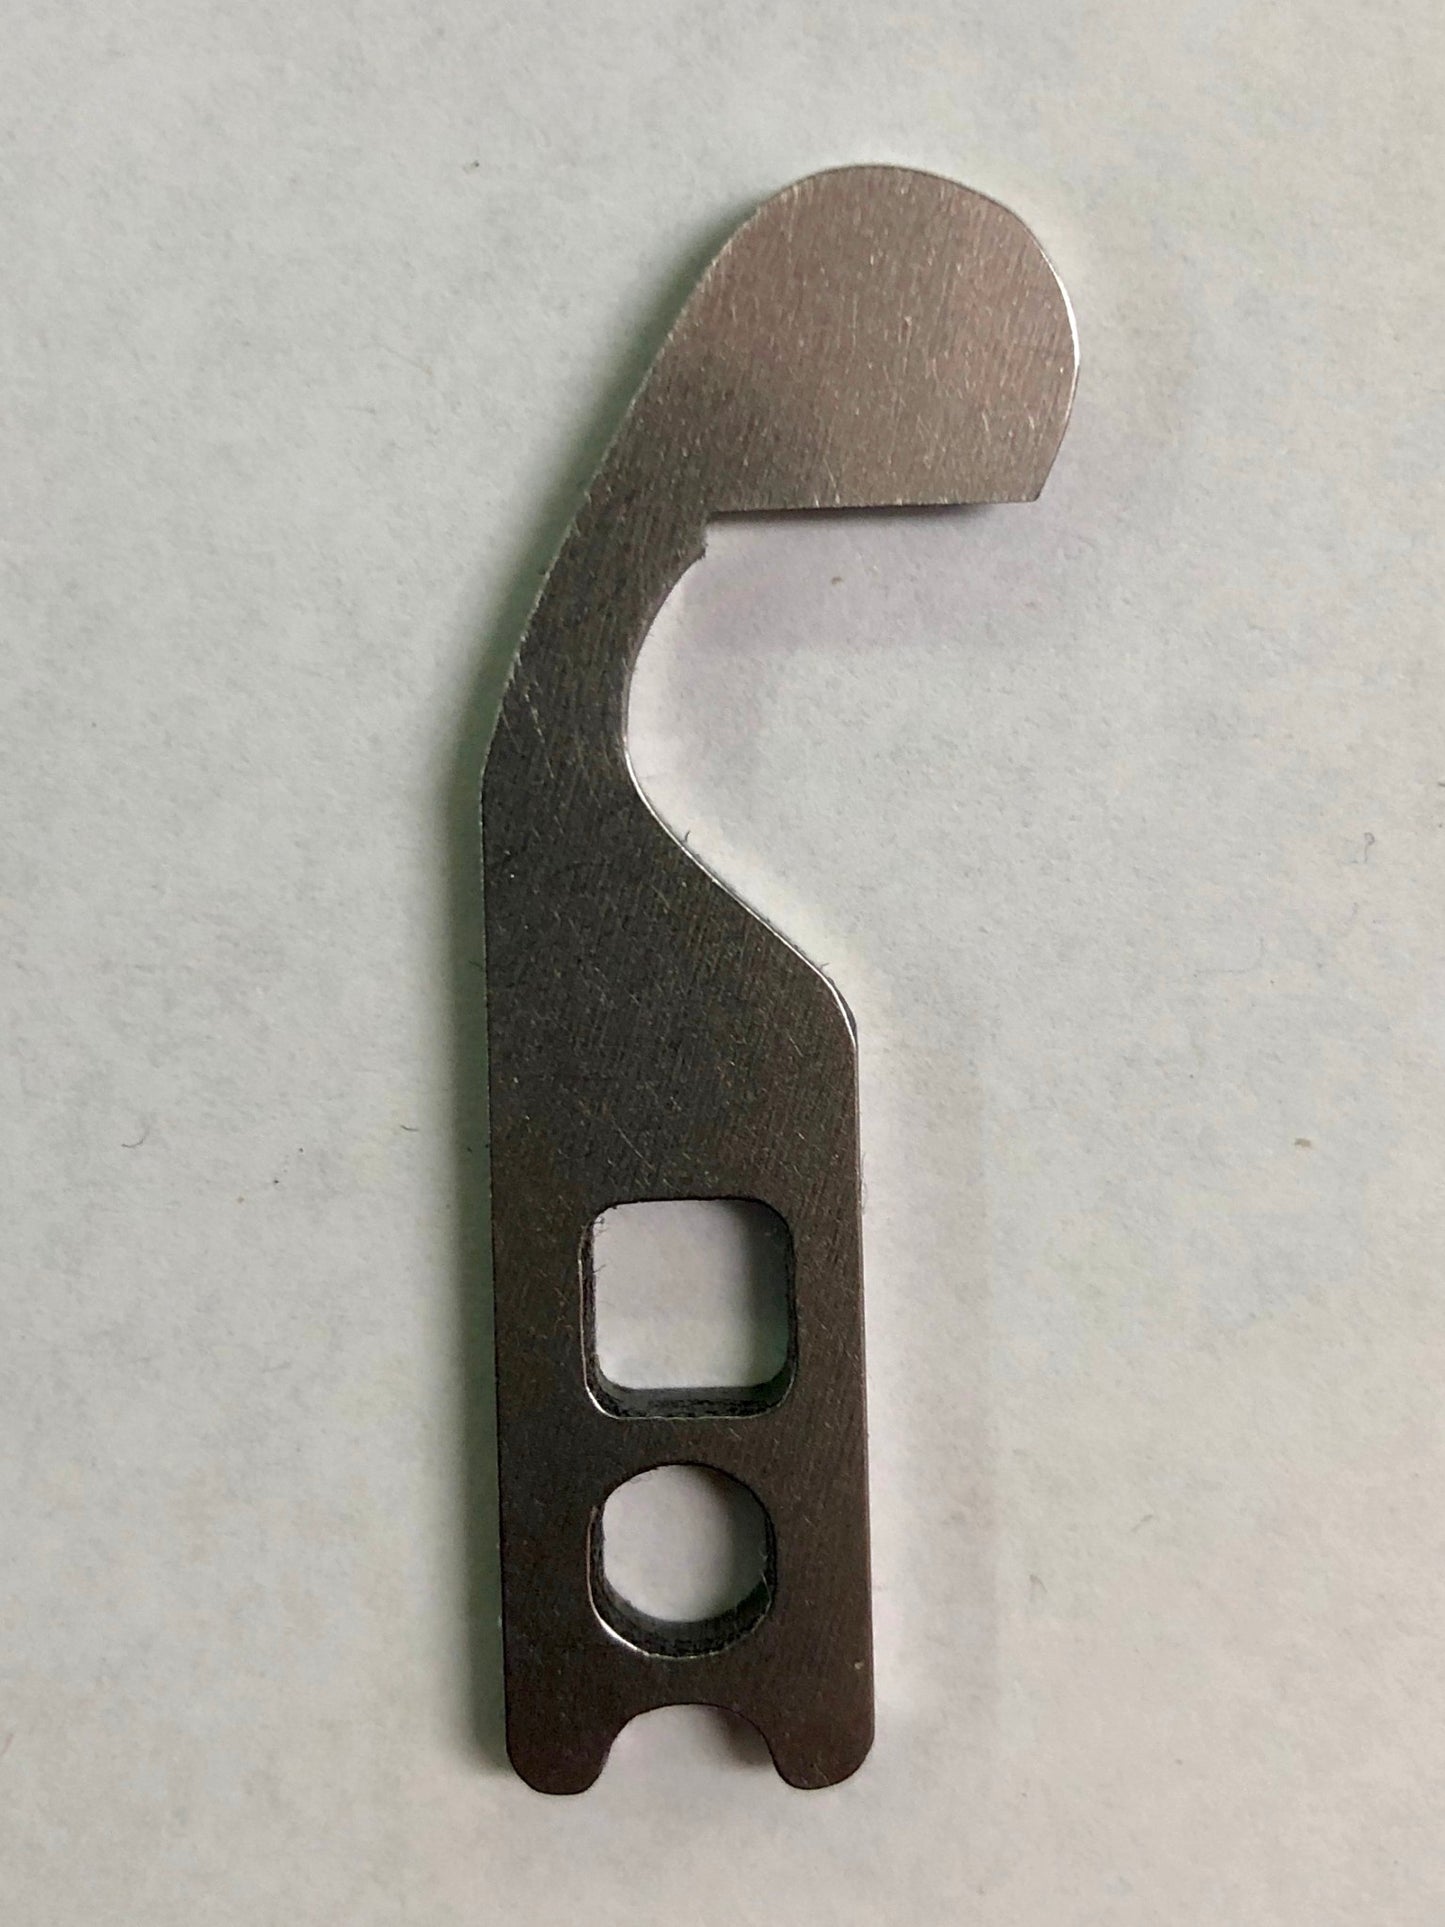 JANOME OVERLOCKER UPPER KNIFE (788127007)